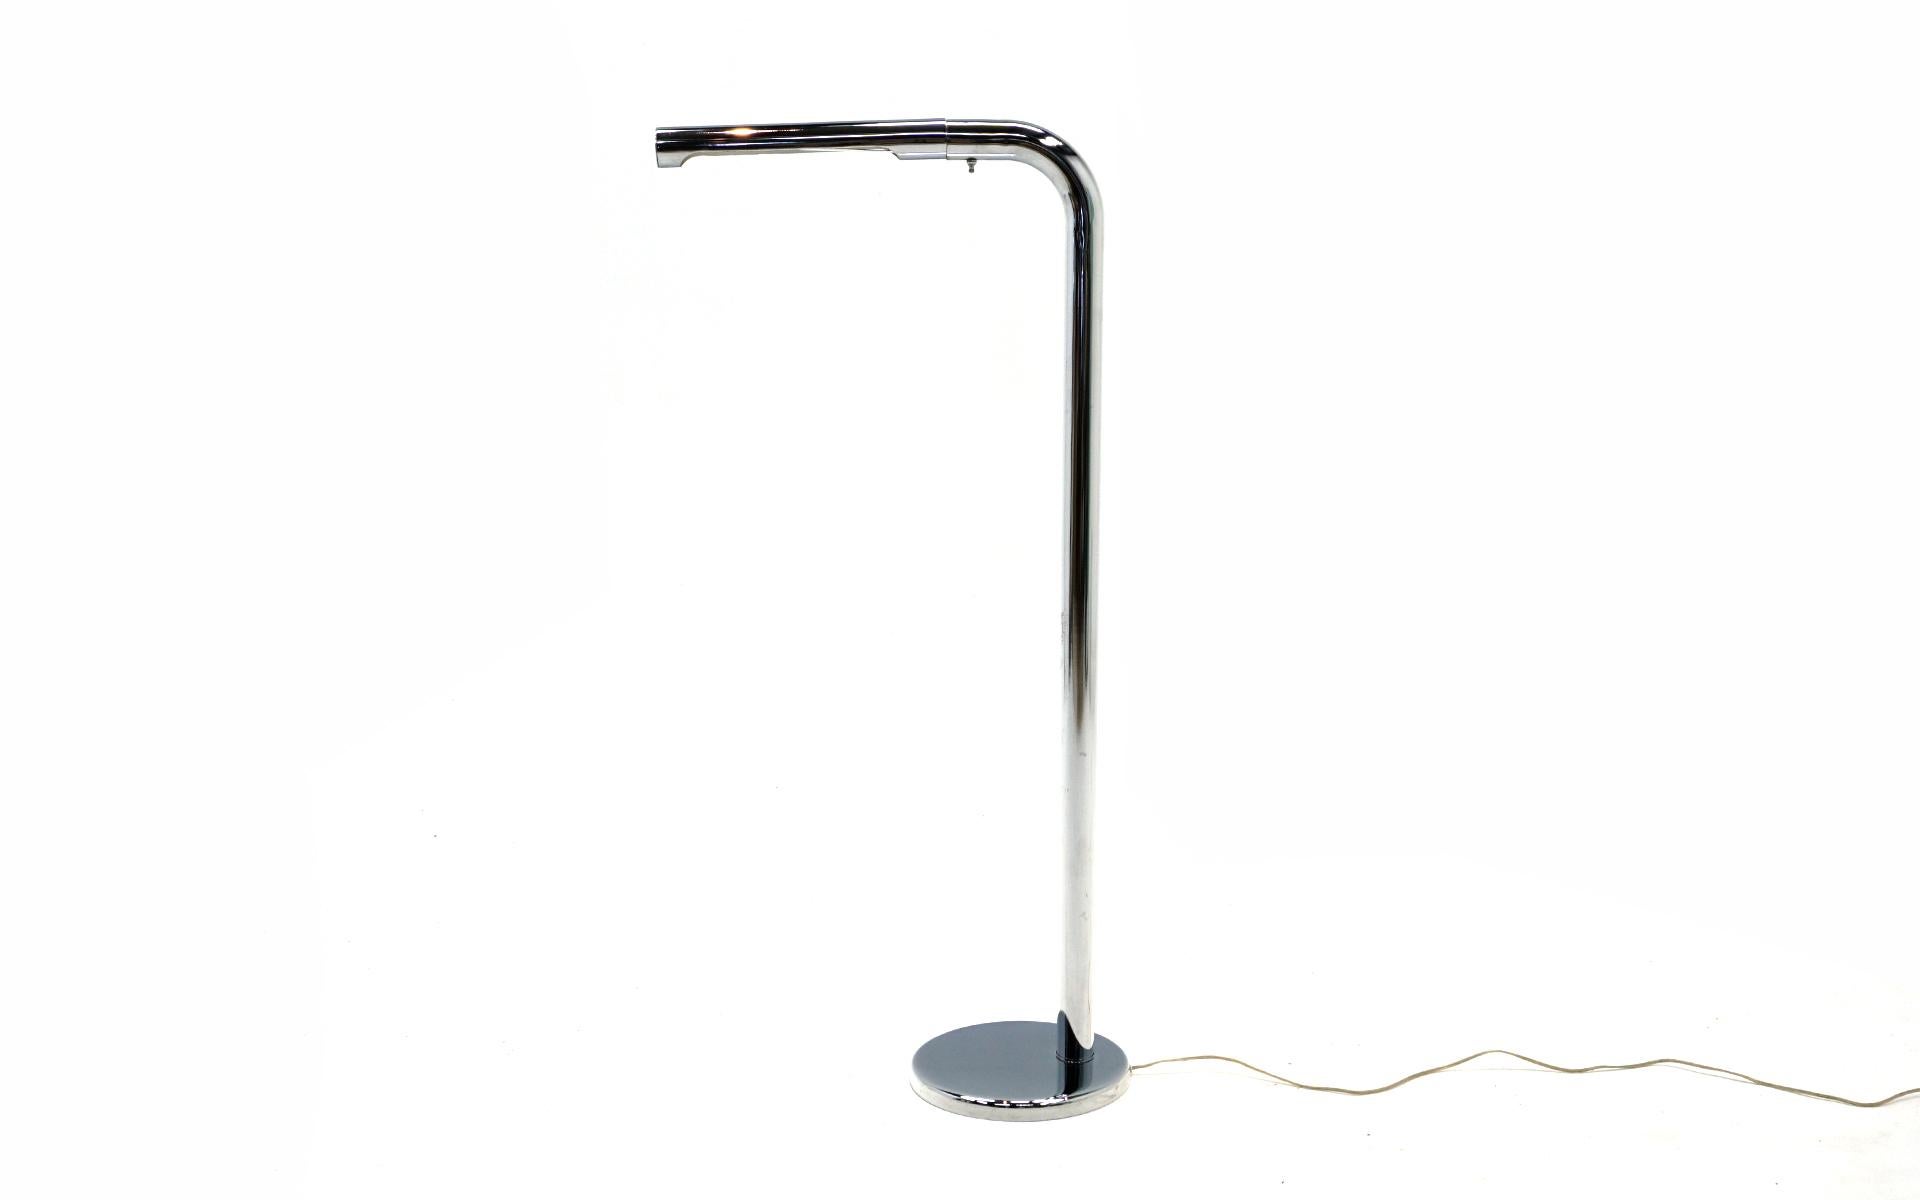 Lampadaire en acier chromé conçu par Robert Sonneman, années 1960. L'angle de 90 degrés offre un excellent éclairage pour la lecture ou un éclairage d'accentuation. Peu de signes d'utilisation avec seulement de très légères éraflures sur la